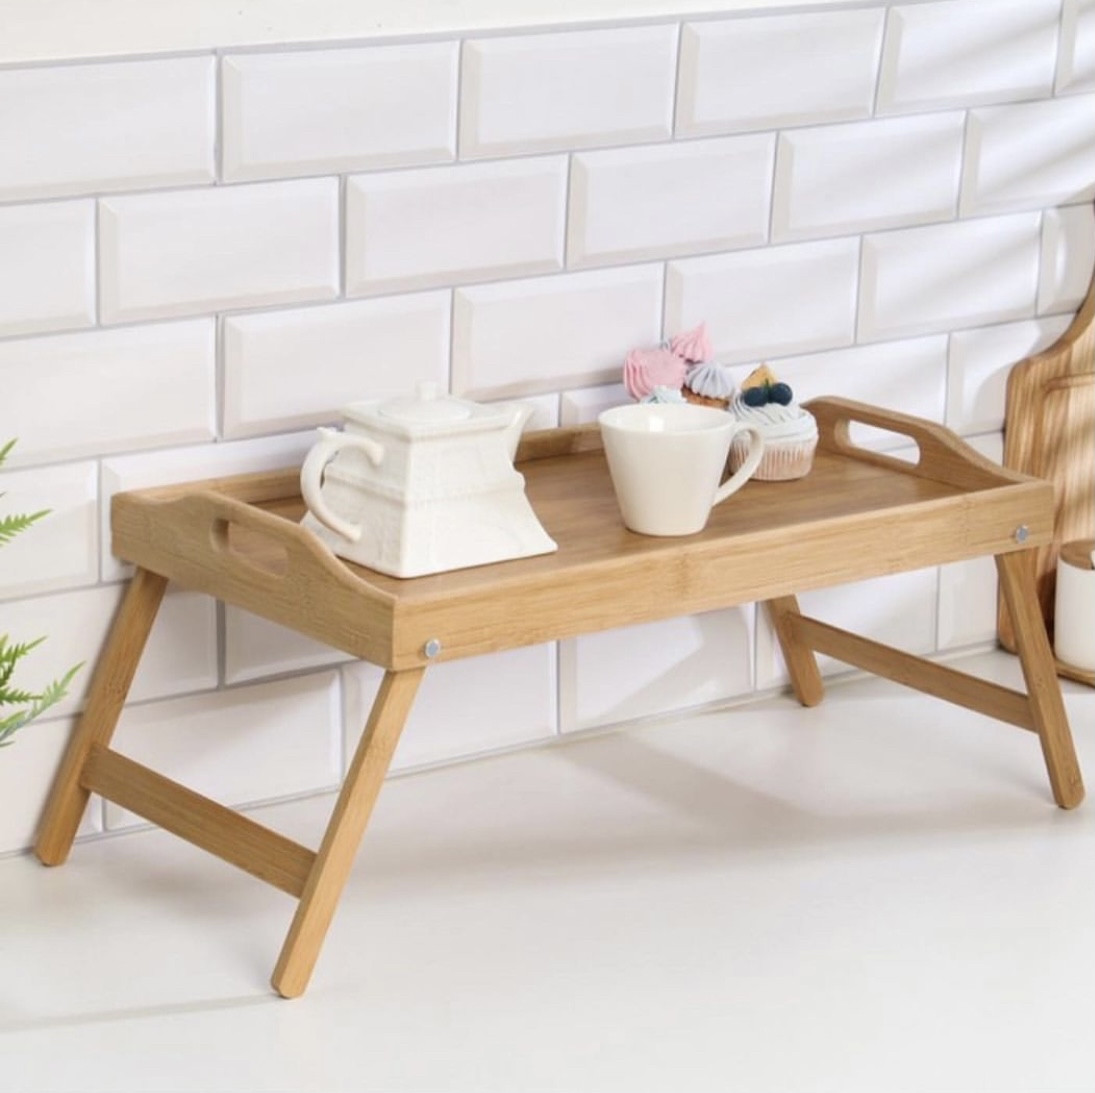 Столик - поднос для завтрака с ручками, складной, бамбук